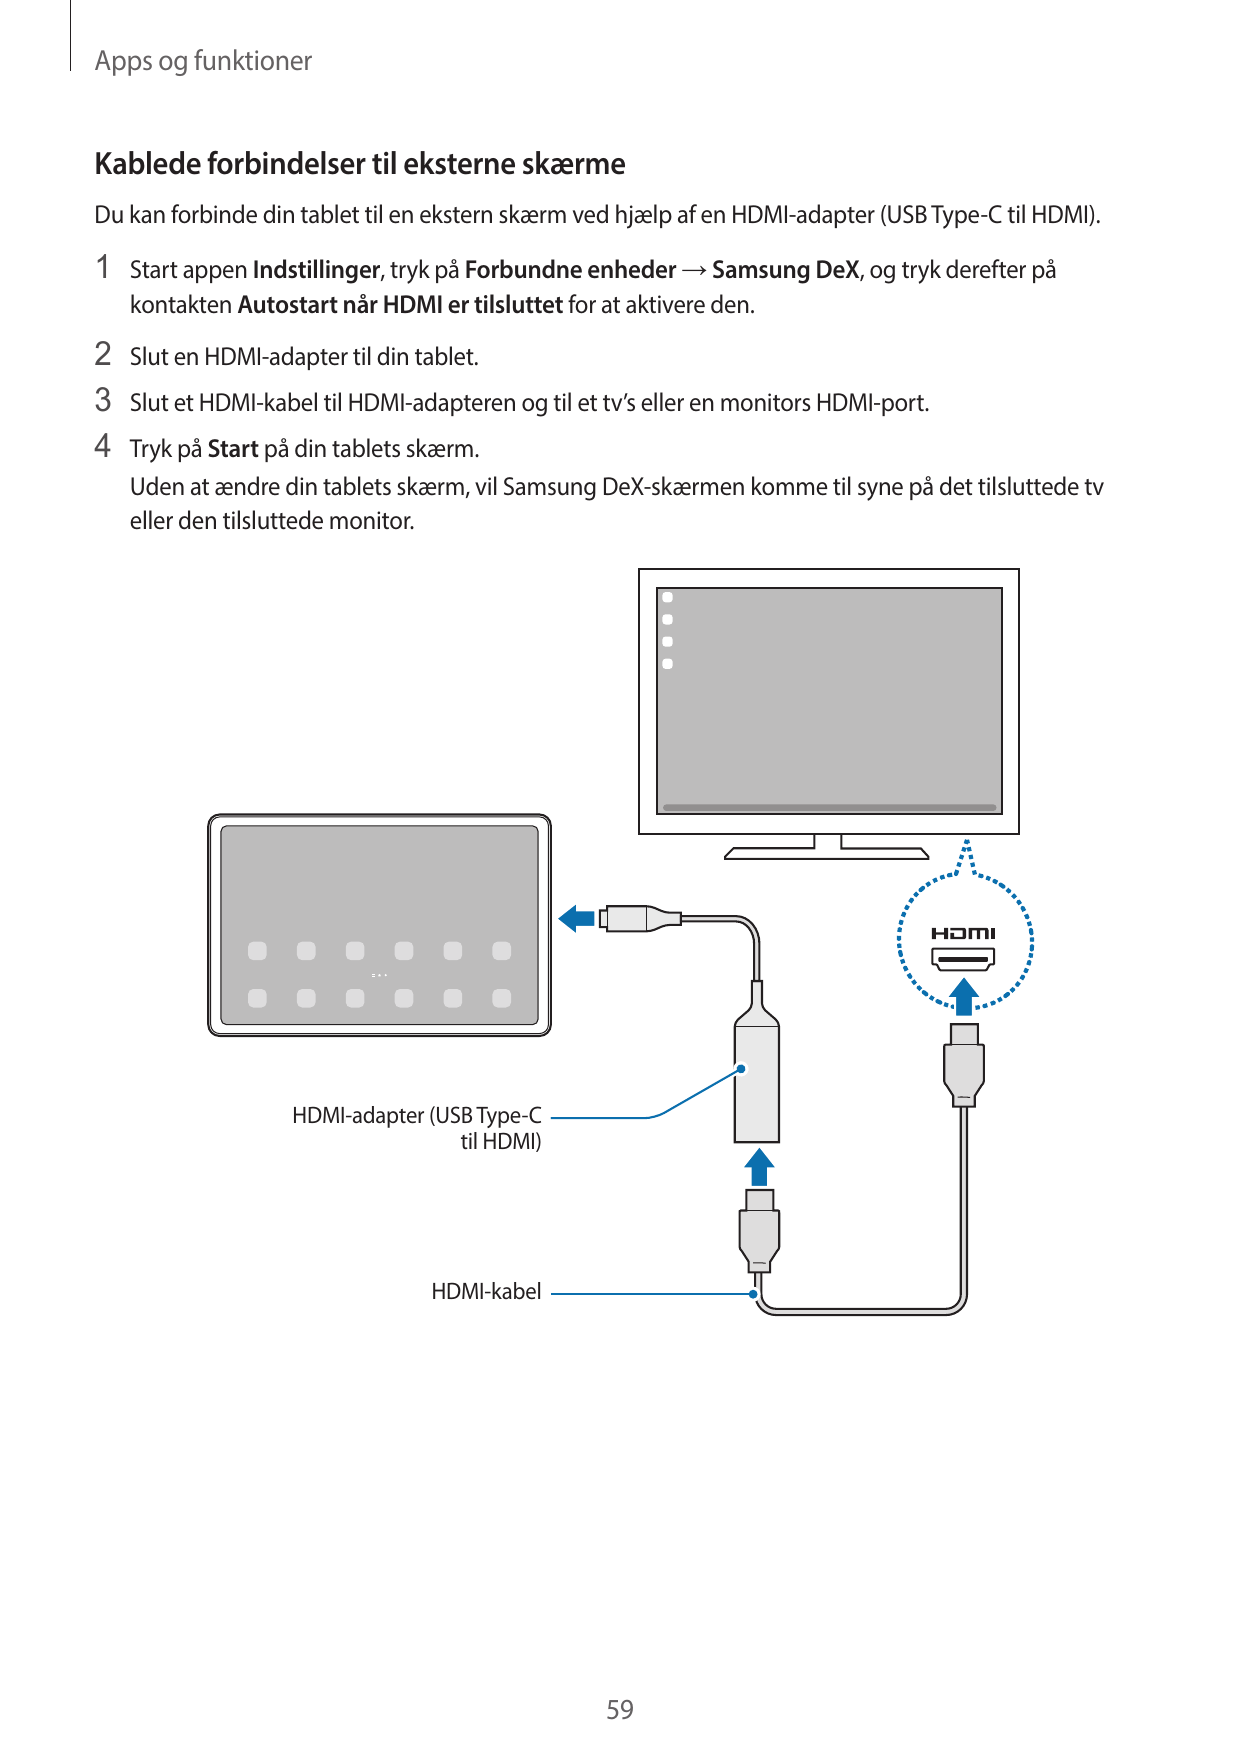 Apps og funktionerKablede forbindelser til eksterne skærmeDu kan forbinde din tablet til en ekstern skærm ved hjælp af en HDMI-a